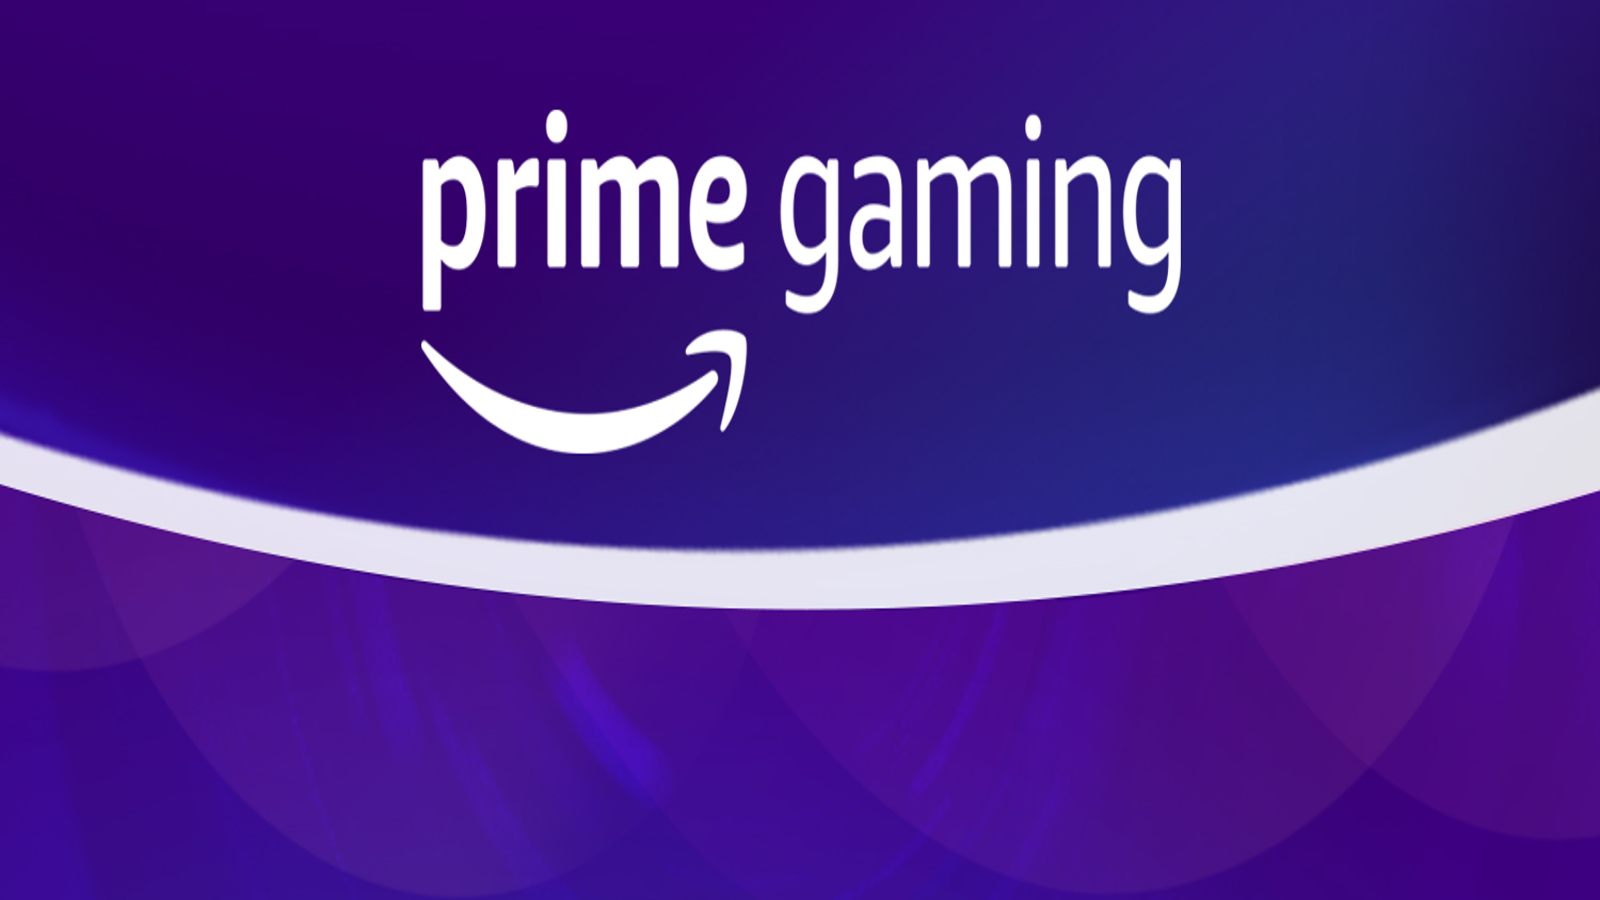 Prime – Prime Gaming